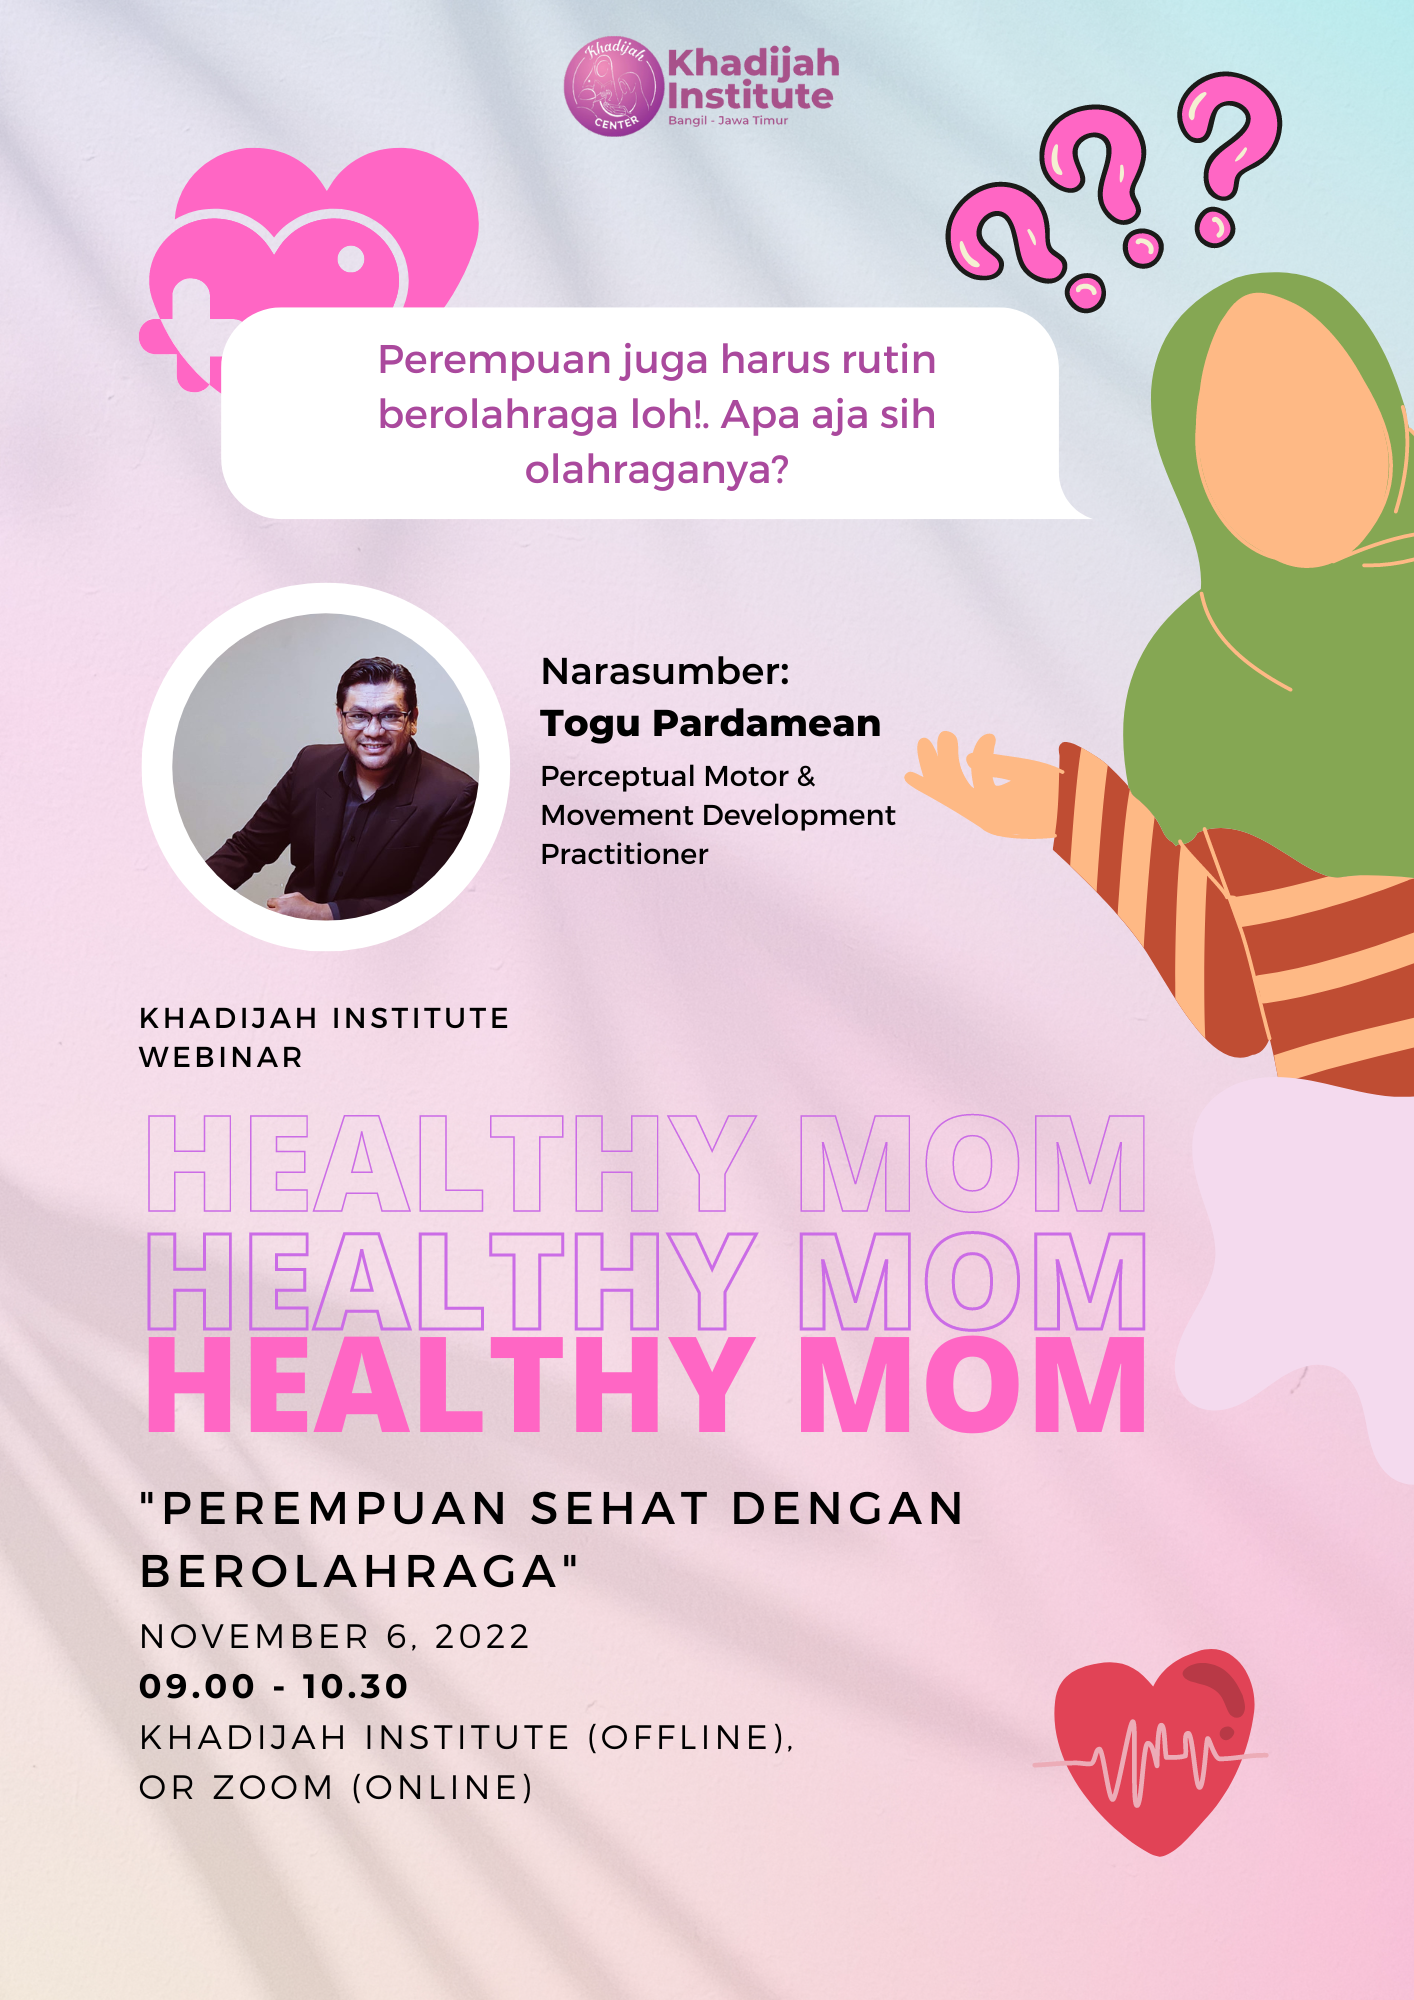 Healthy Mom “Perempuan Sehat dengan Berolahraga”